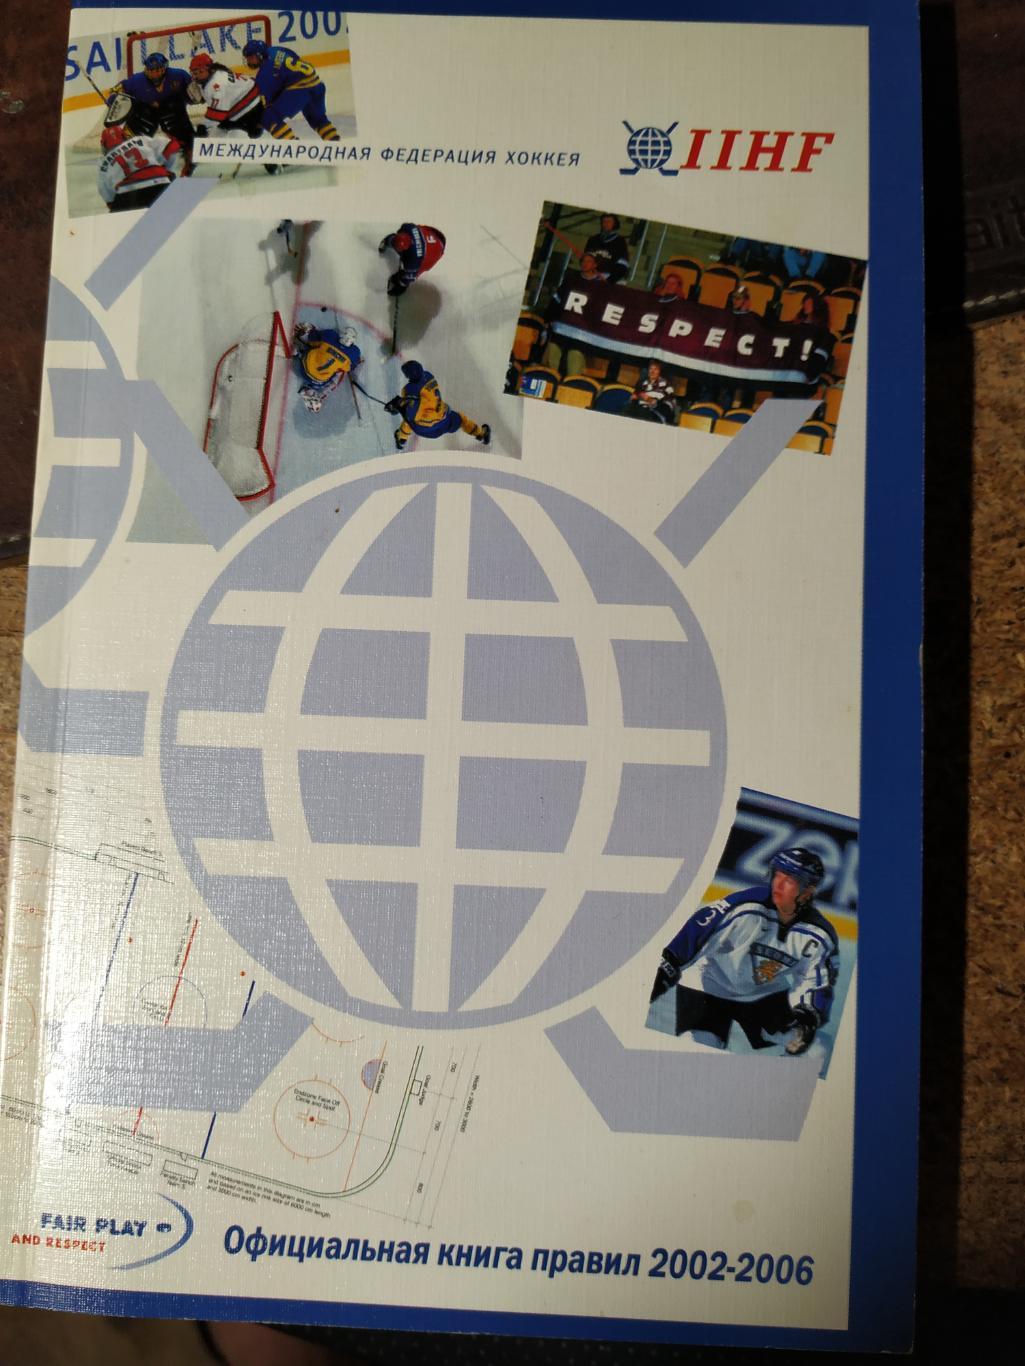 IIHFОфициальная книга правил 2002-2006